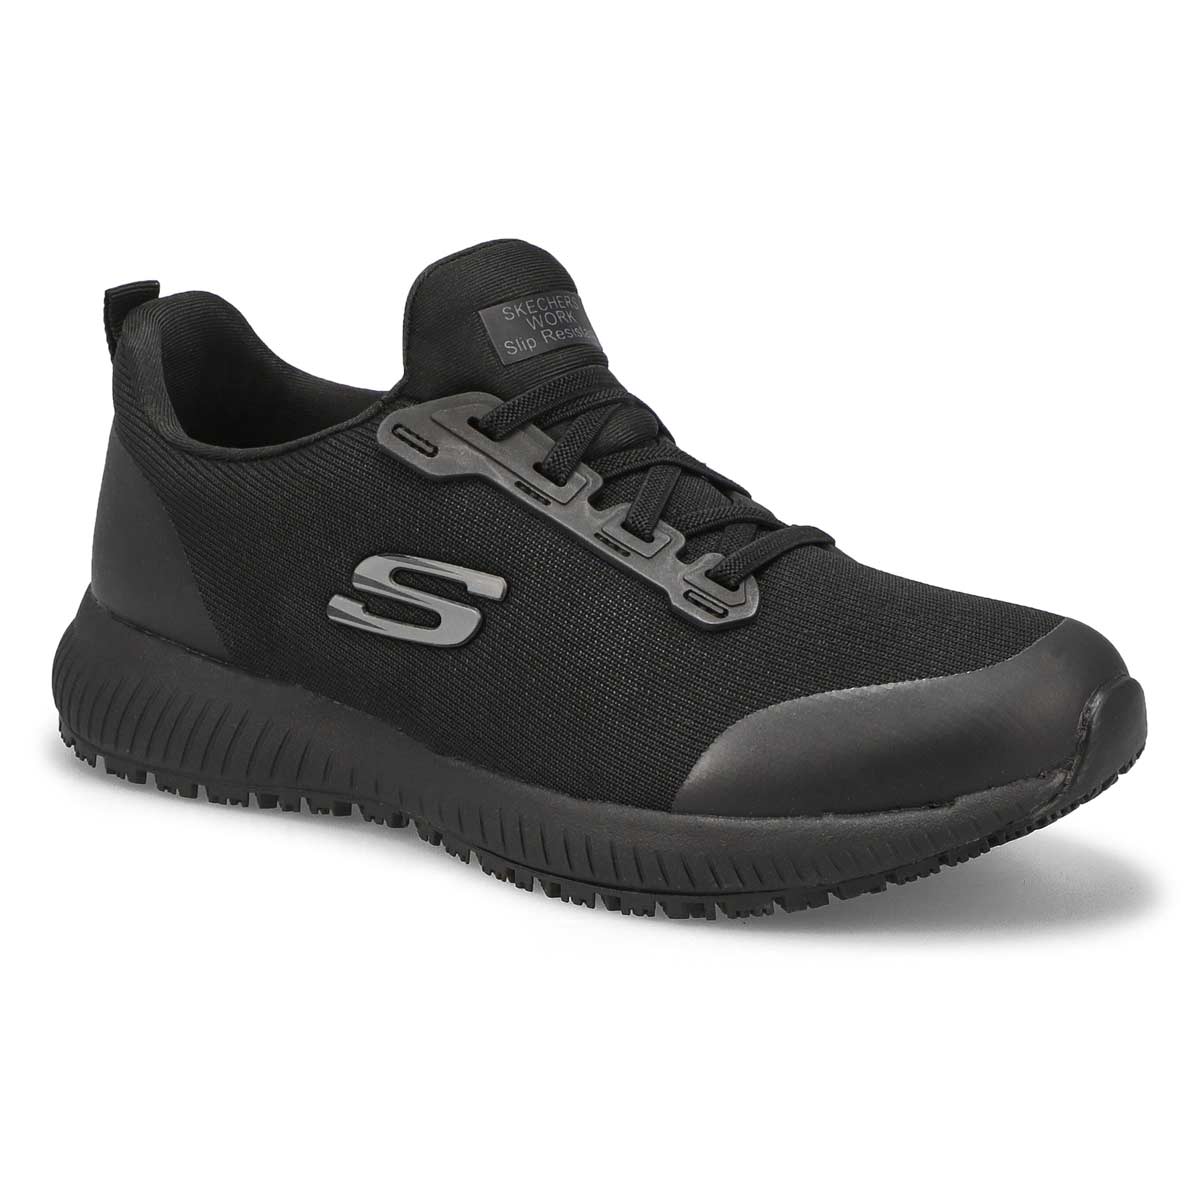 Women's Squad Slip Resistant Sneaker - Black